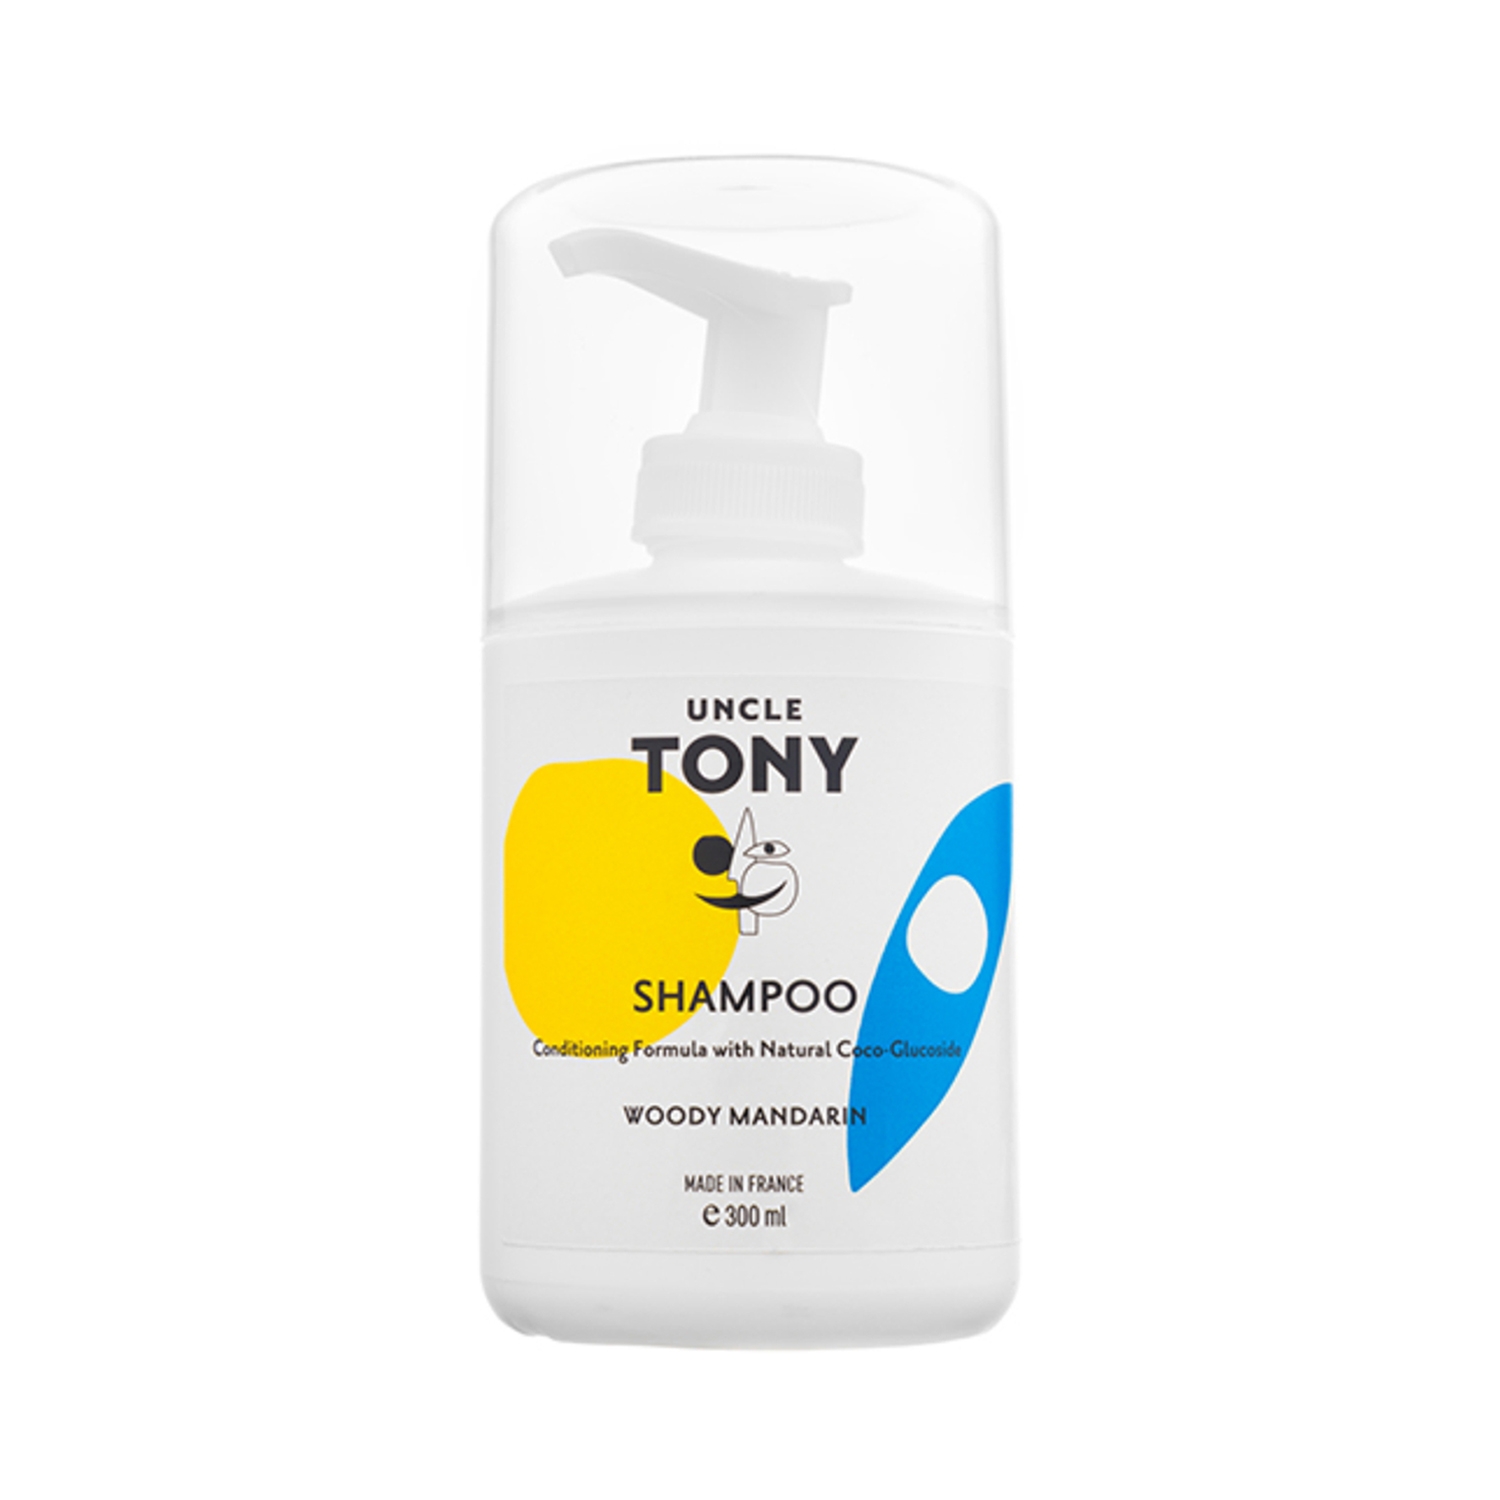 Uncle Tony | Uncle Tony Hair Shampoo (300ml)